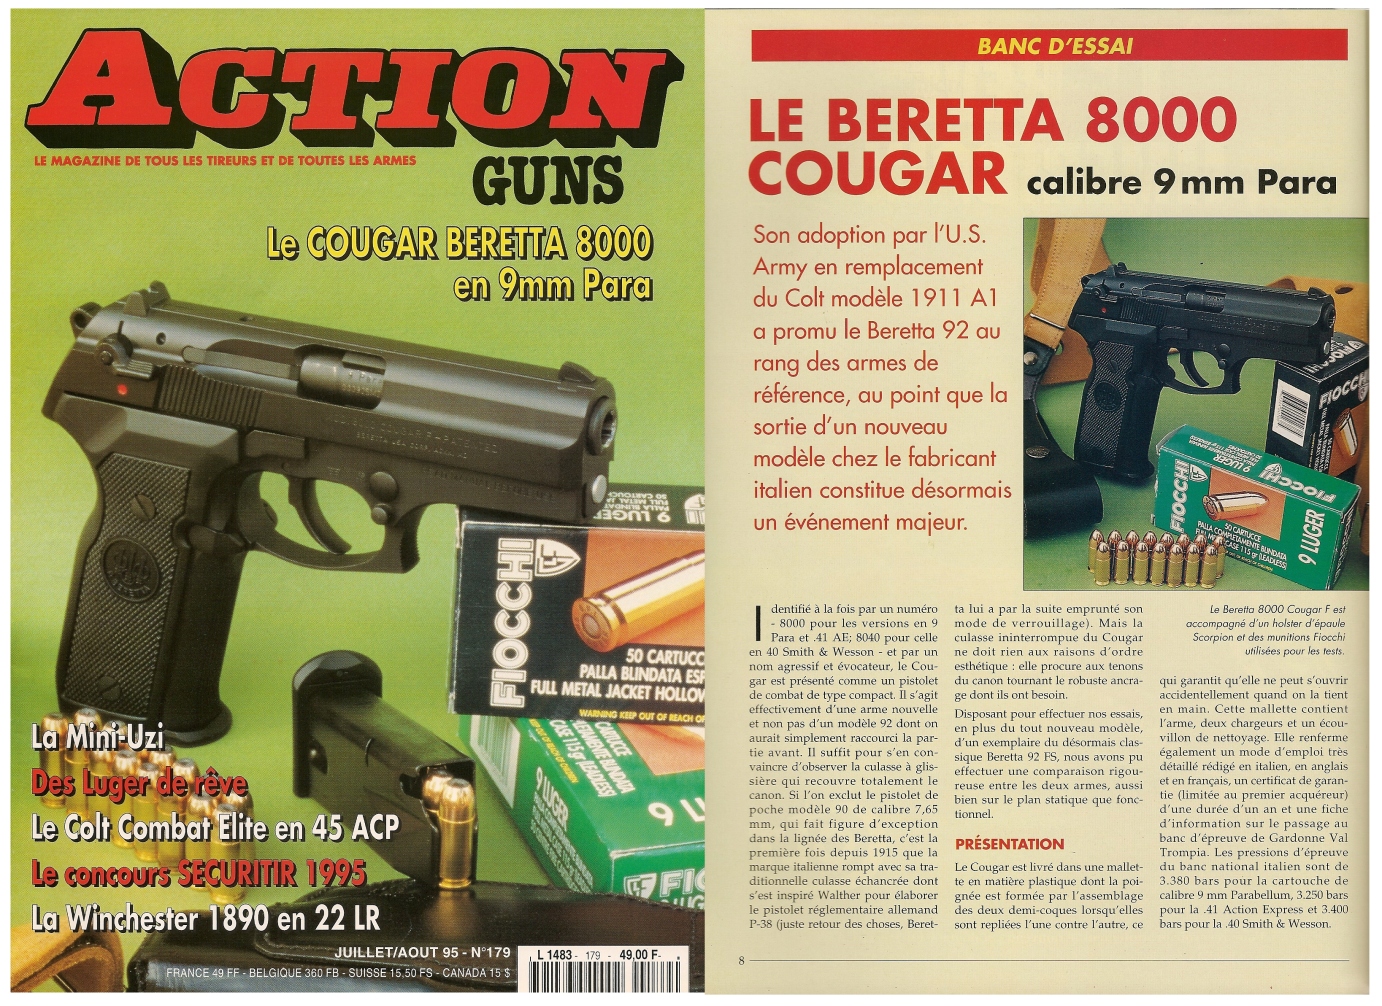 Le banc d’essai du pistolet Beretta 8000 Cougar a été publié sur 7 pages dans le magazine Action Guns n°179 (juillet-août 1995).